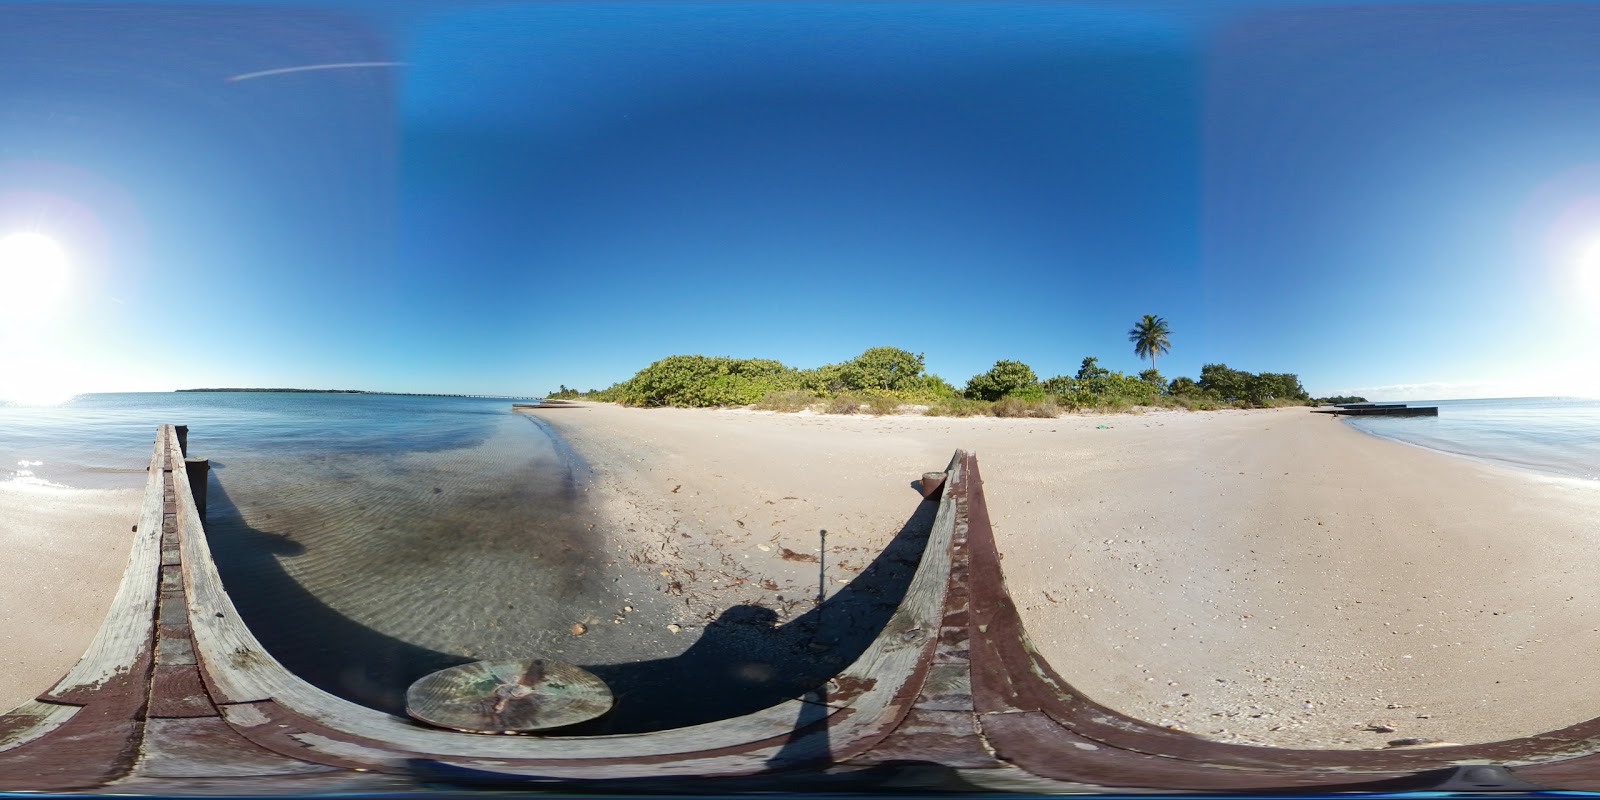 Photo de Virginia Key beach - endroit populaire parmi les connaisseurs de la détente